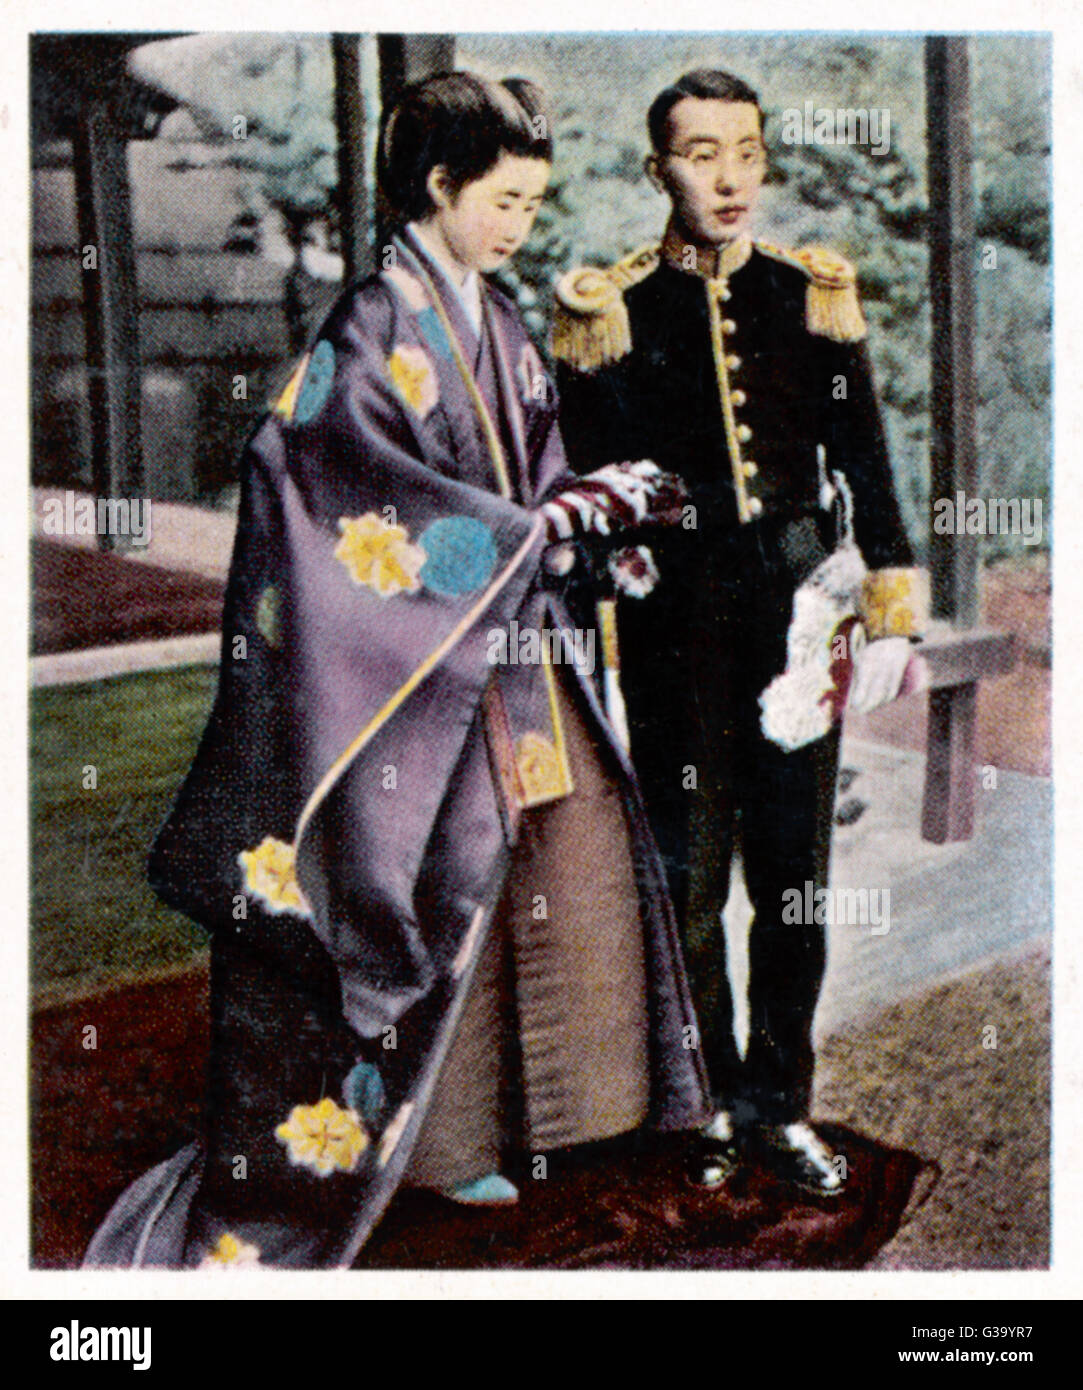 L'imperatore Hirohito in trono. Data: 28 dicembre 1926 Foto Stock